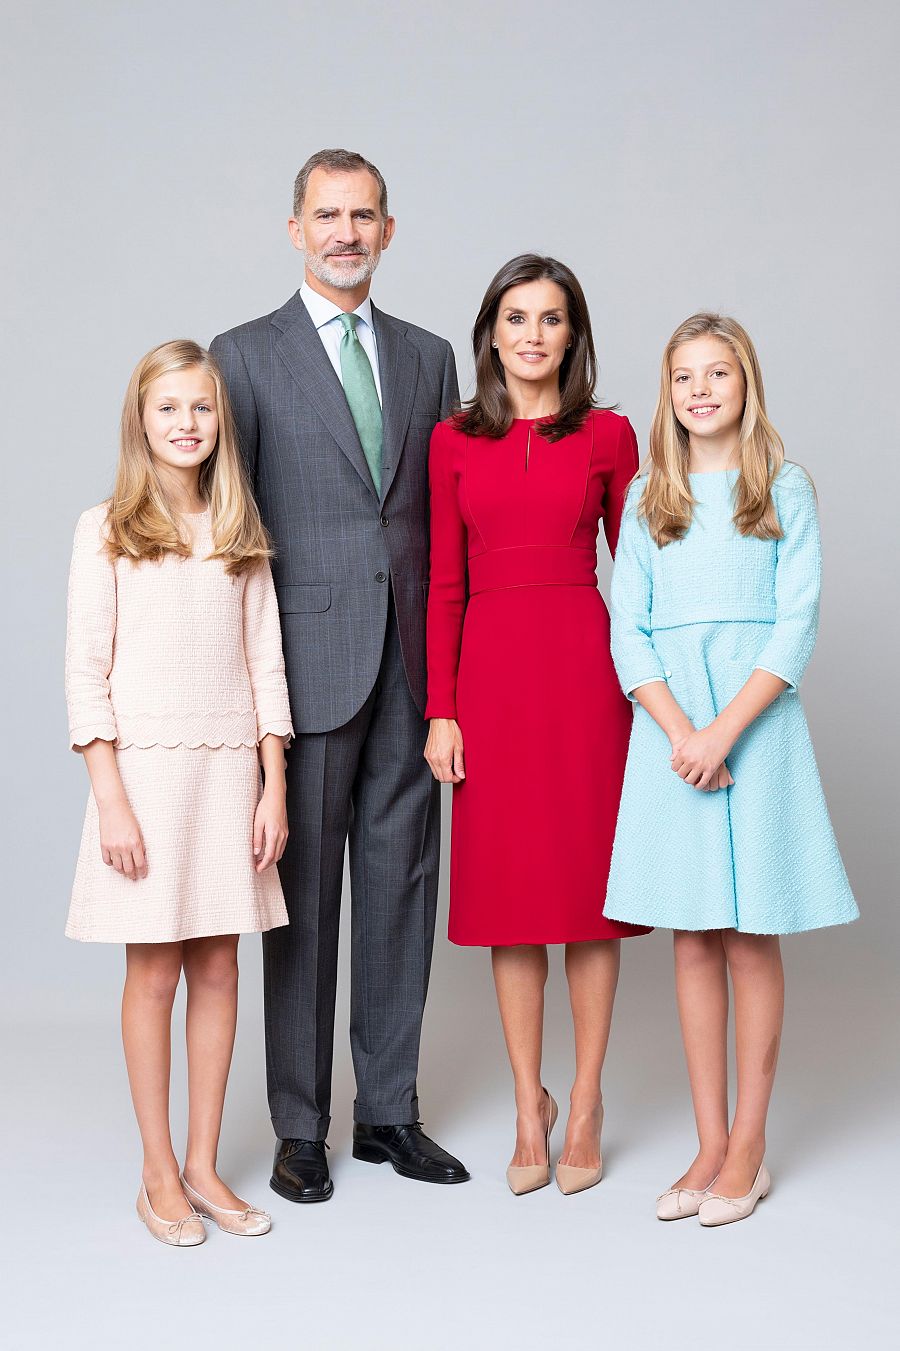 La Familia Real en su nueva fotografía familiar. Felipe VI luce traje gris y corbata verde clara, mientras que la reina Letizia porta un vestido rojo. Por su parte, sus hijas llevan la misma vestimenta que en sus fotografías individuales.